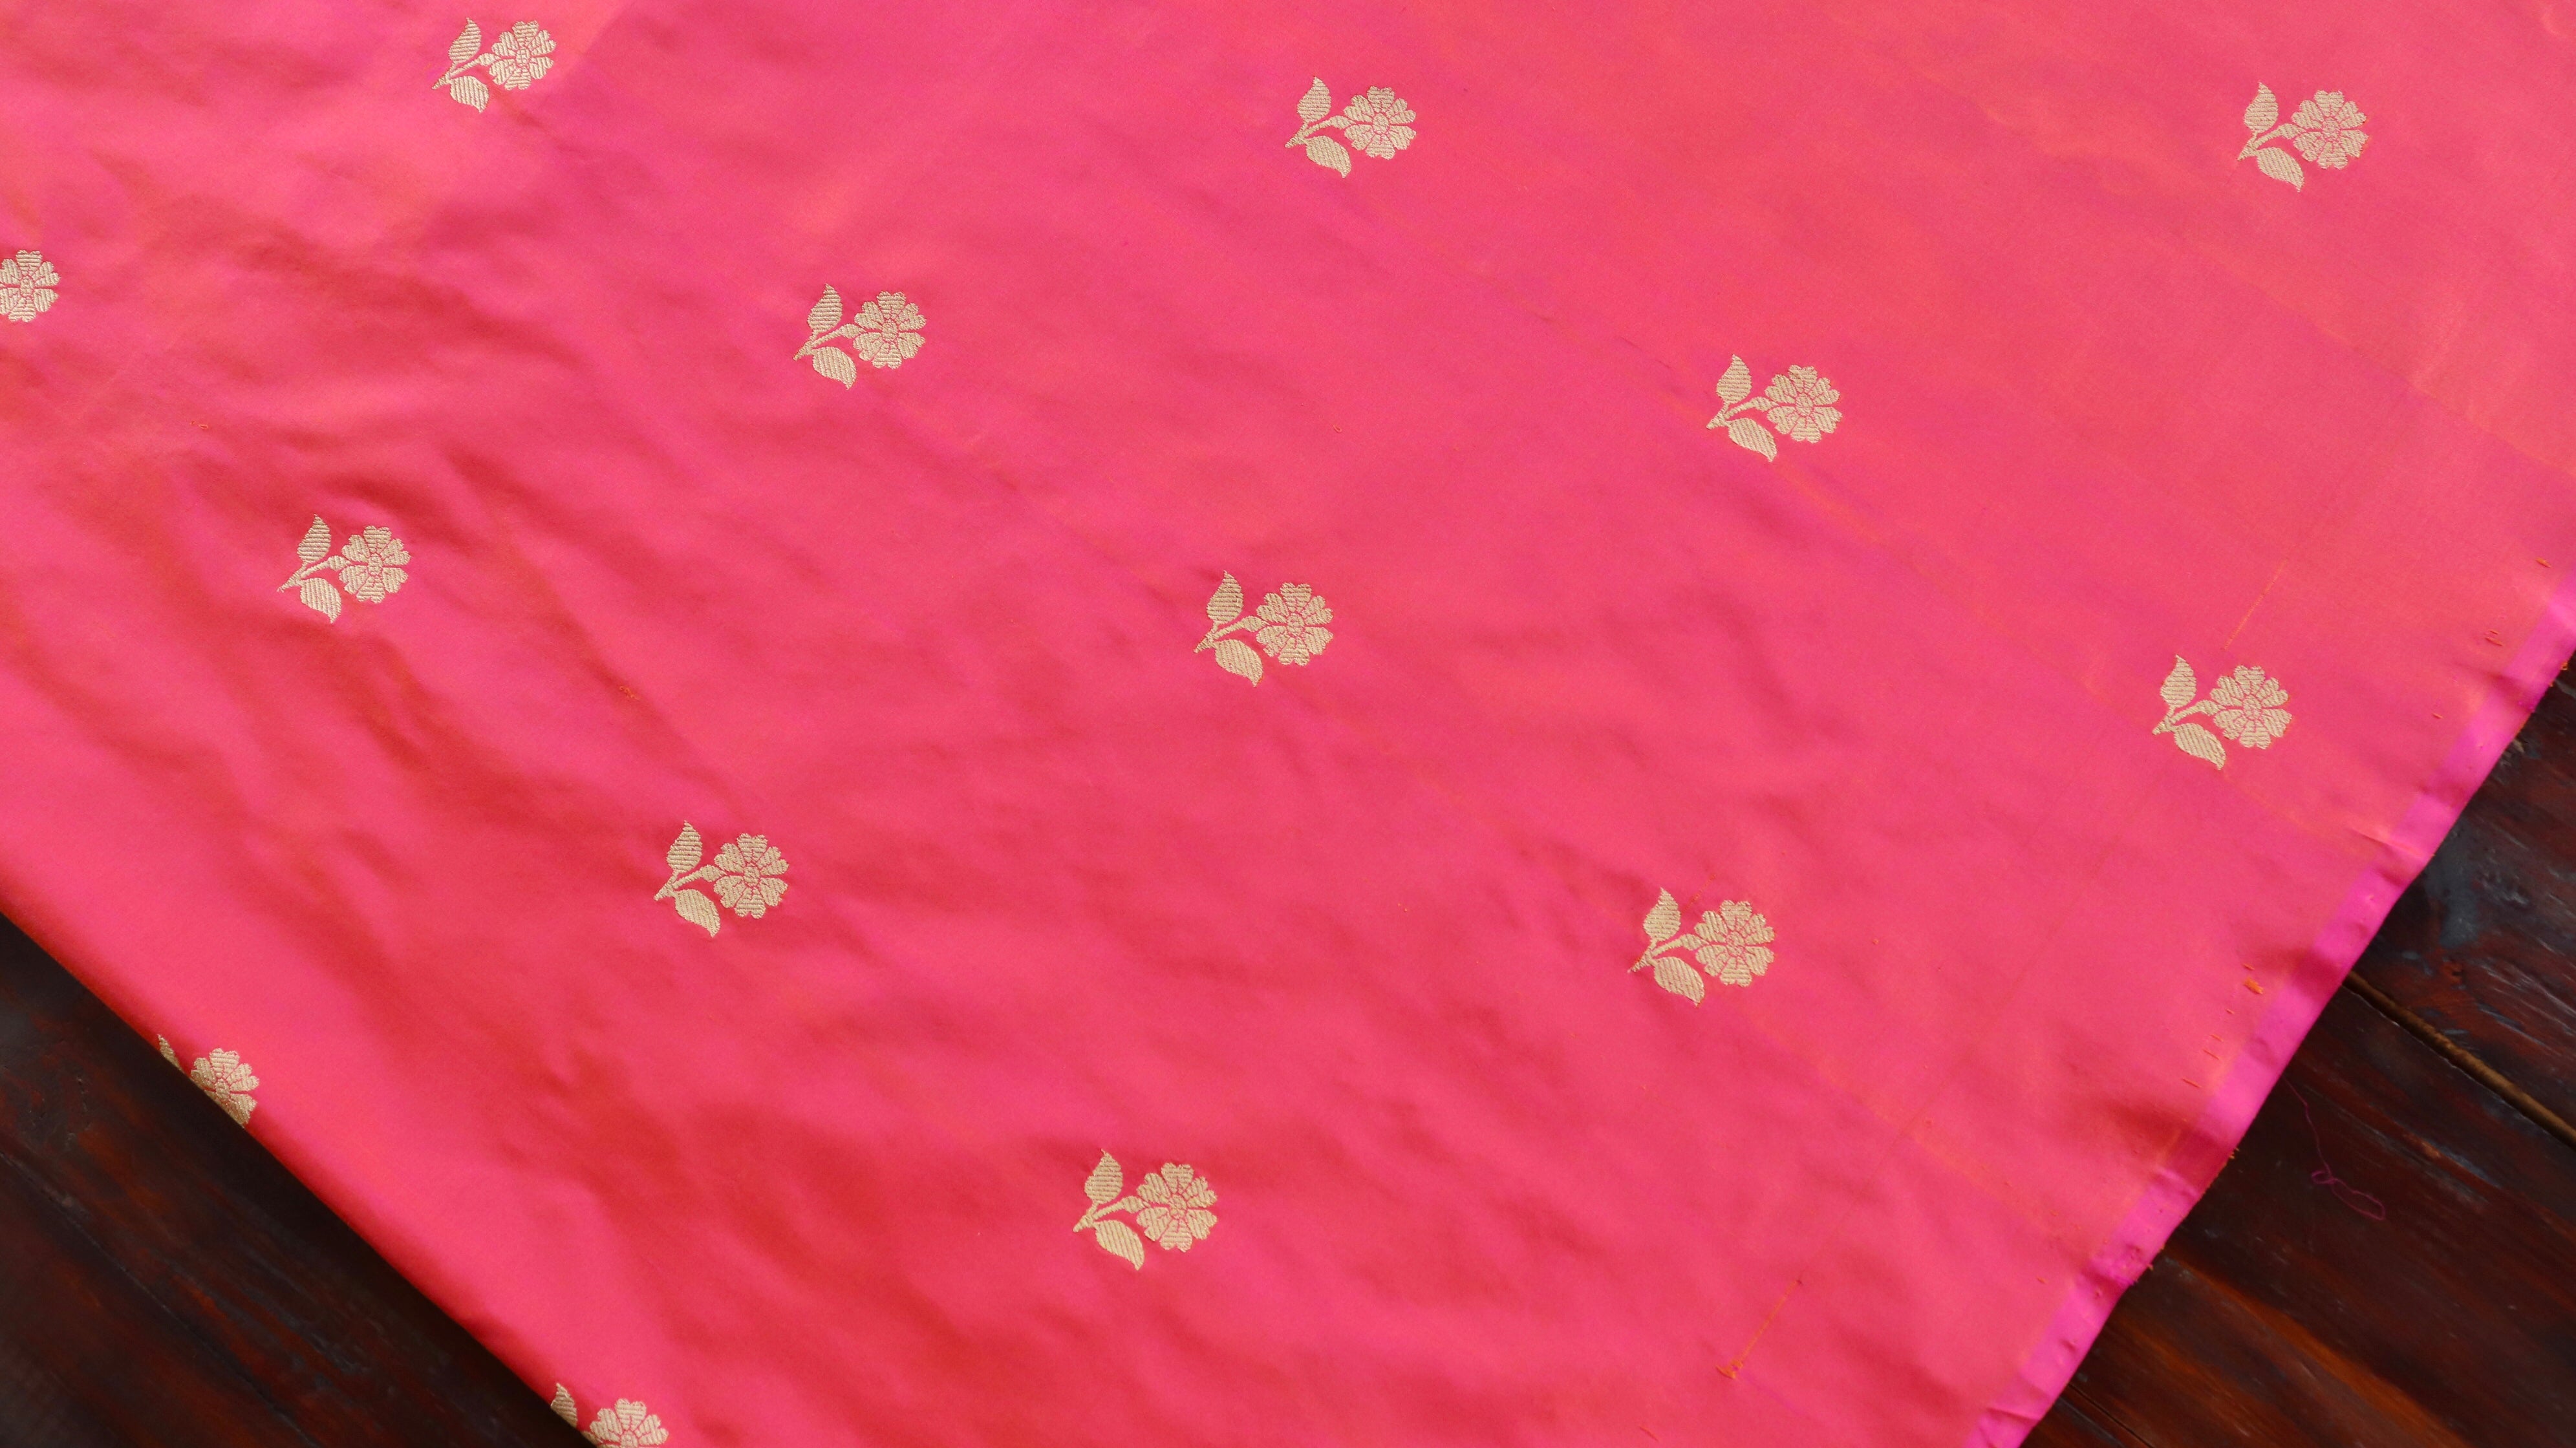 Handloom, Banarasi Handloom Saree, Alfi Saree, Tilfi Saree, Tilfi Saree Banaras, Tilfi, Banarasi Bunkar, Banarasi Bridal Wear, BridalWear, Banarasi Handloom Banarasi Gulabi Pink Floral Buti Pure Silk Banarasi Fabric Banarasi Saree